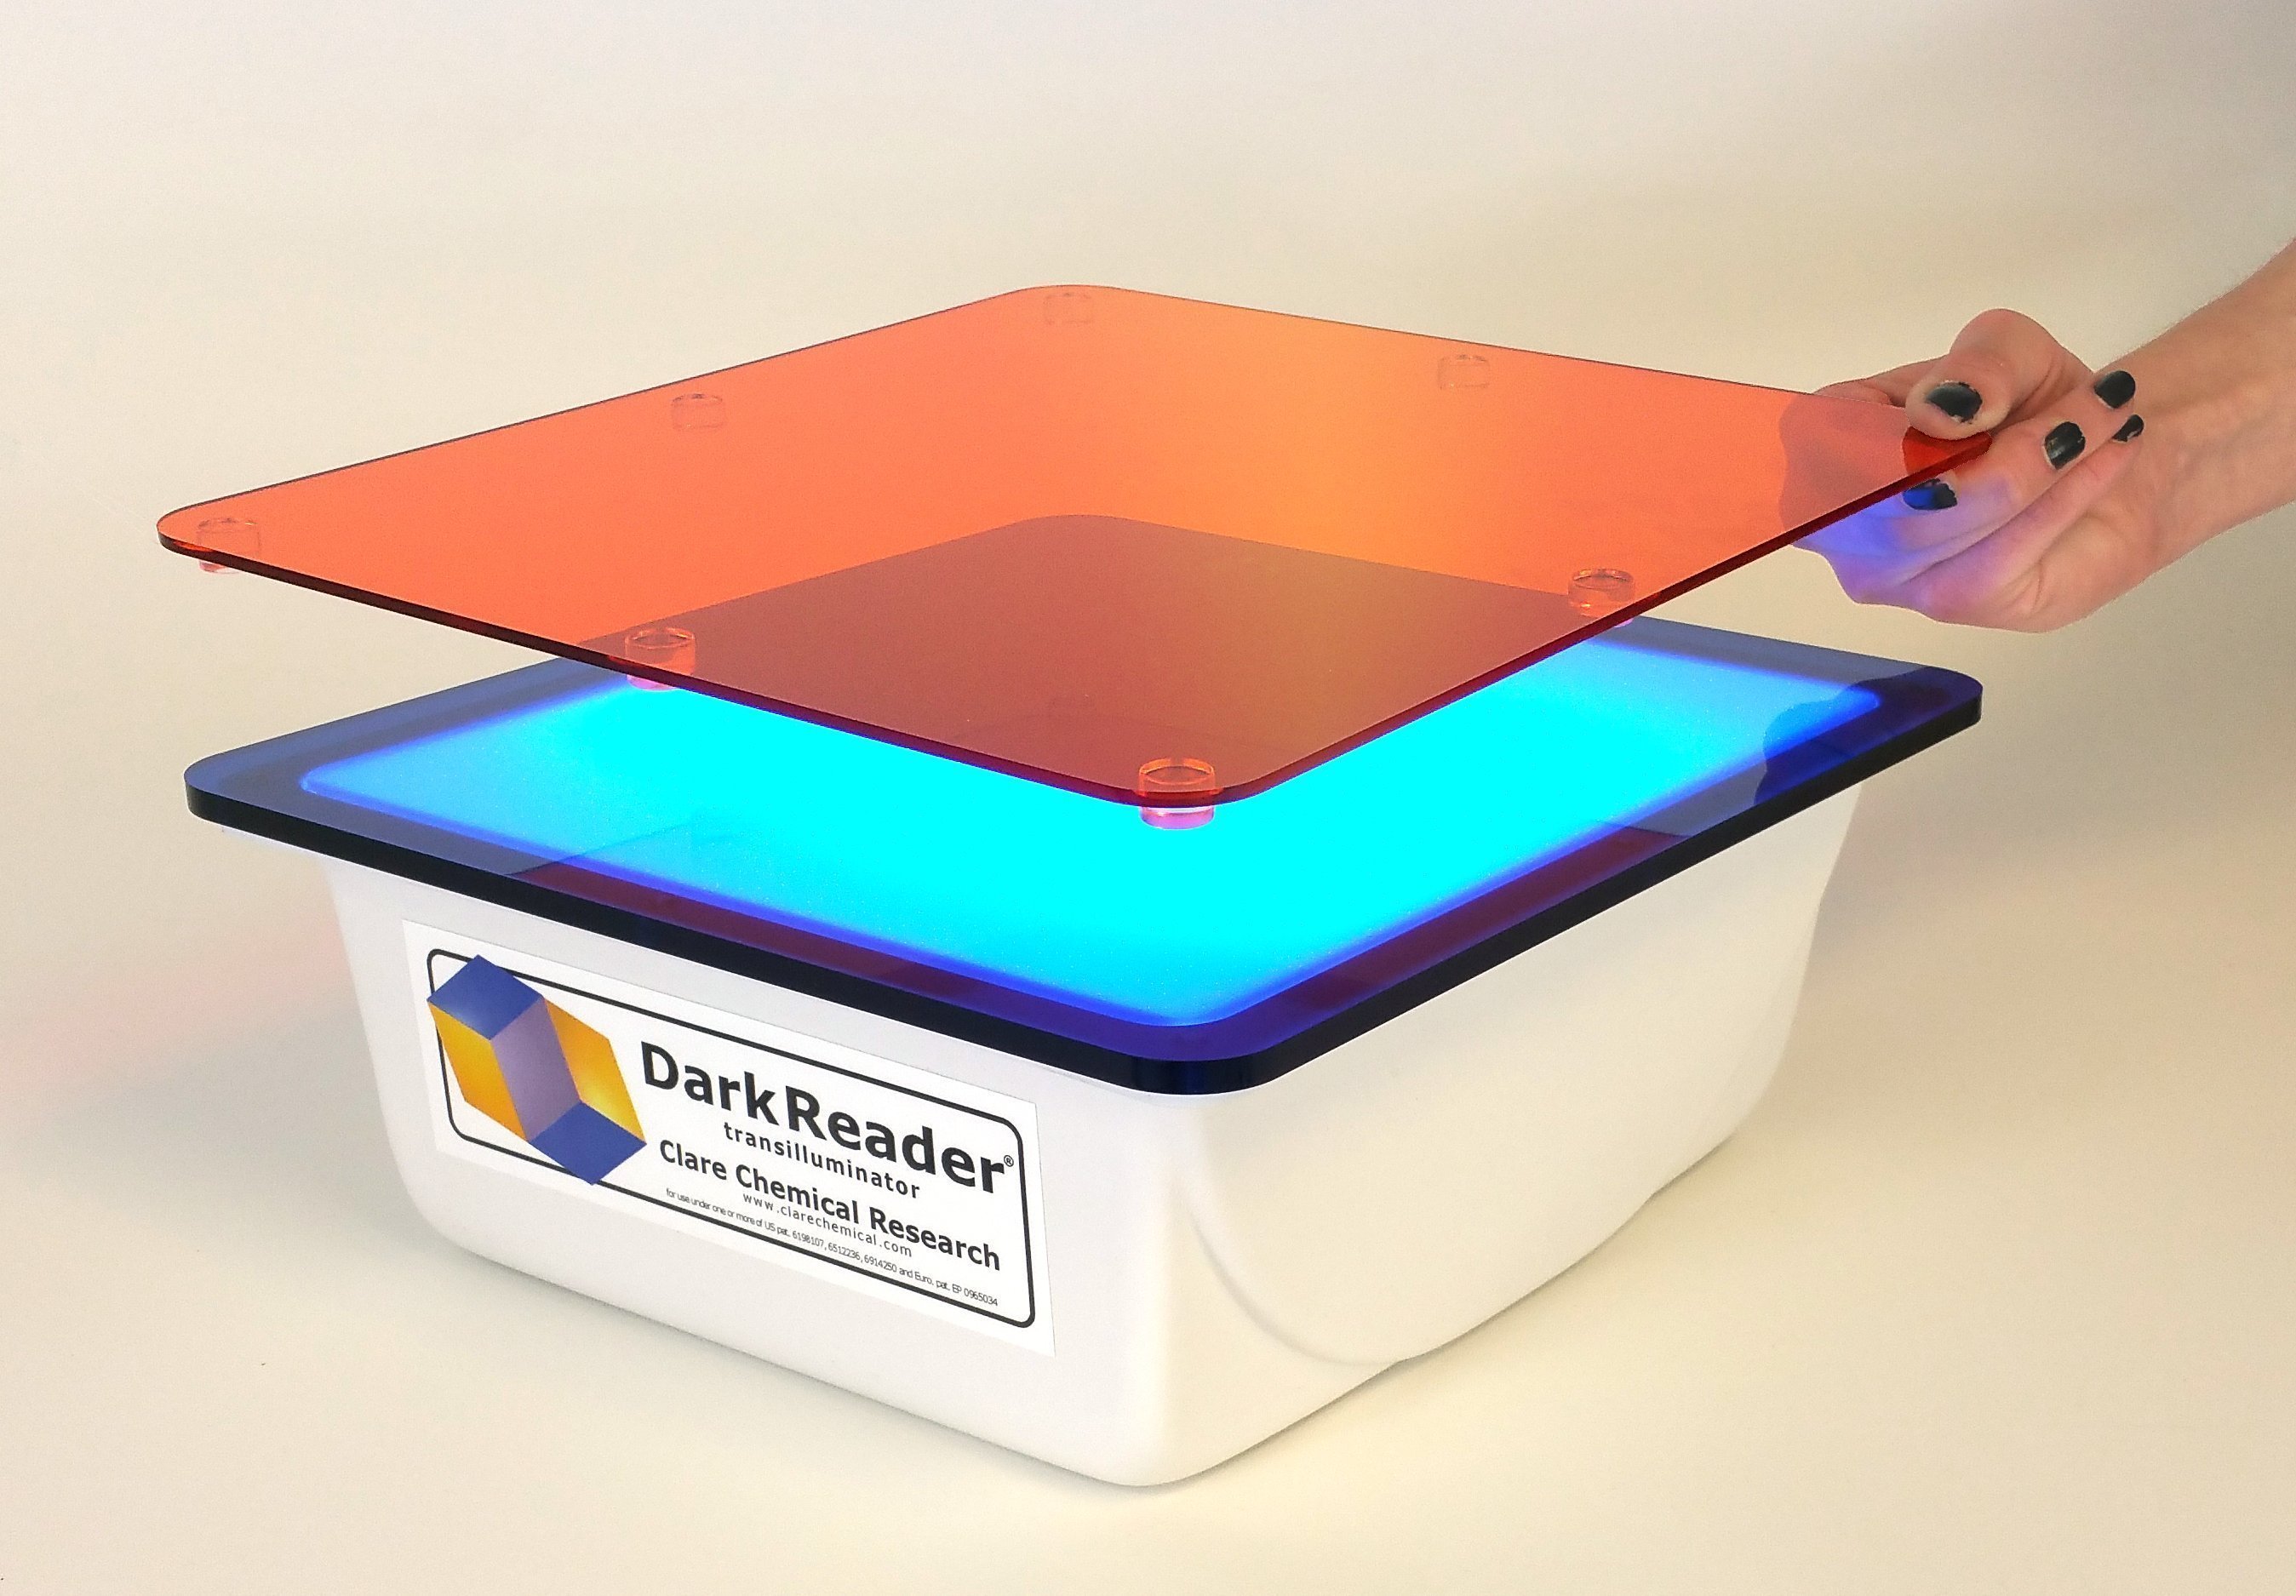 Dark Reader Mid-size Transilluminator 荧光透射仪